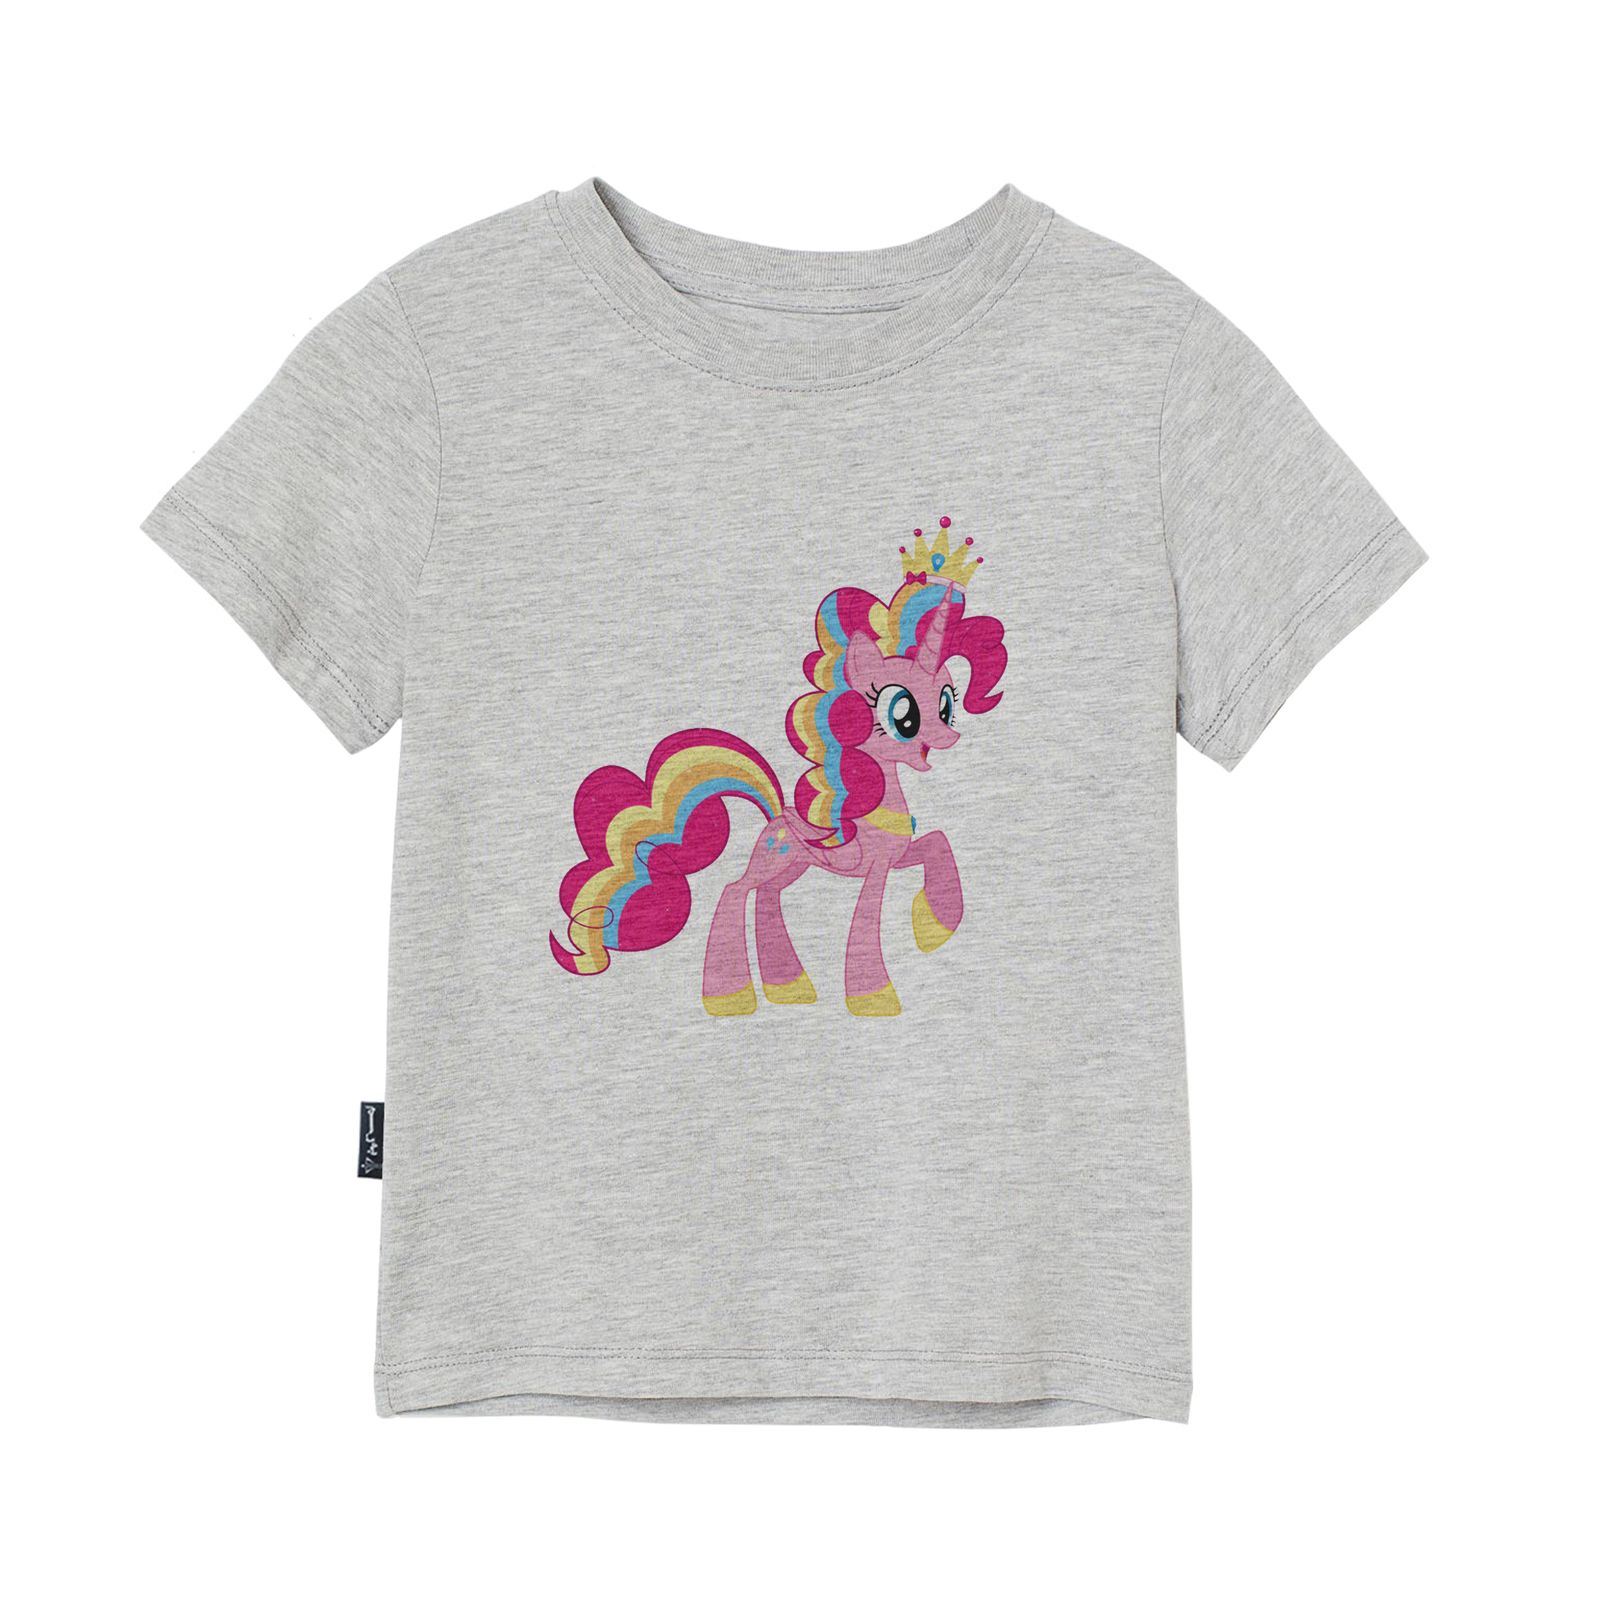 تی شرت آستین کوتاه دخترانه به رسم مدل اسب کد 110016 -  - 1